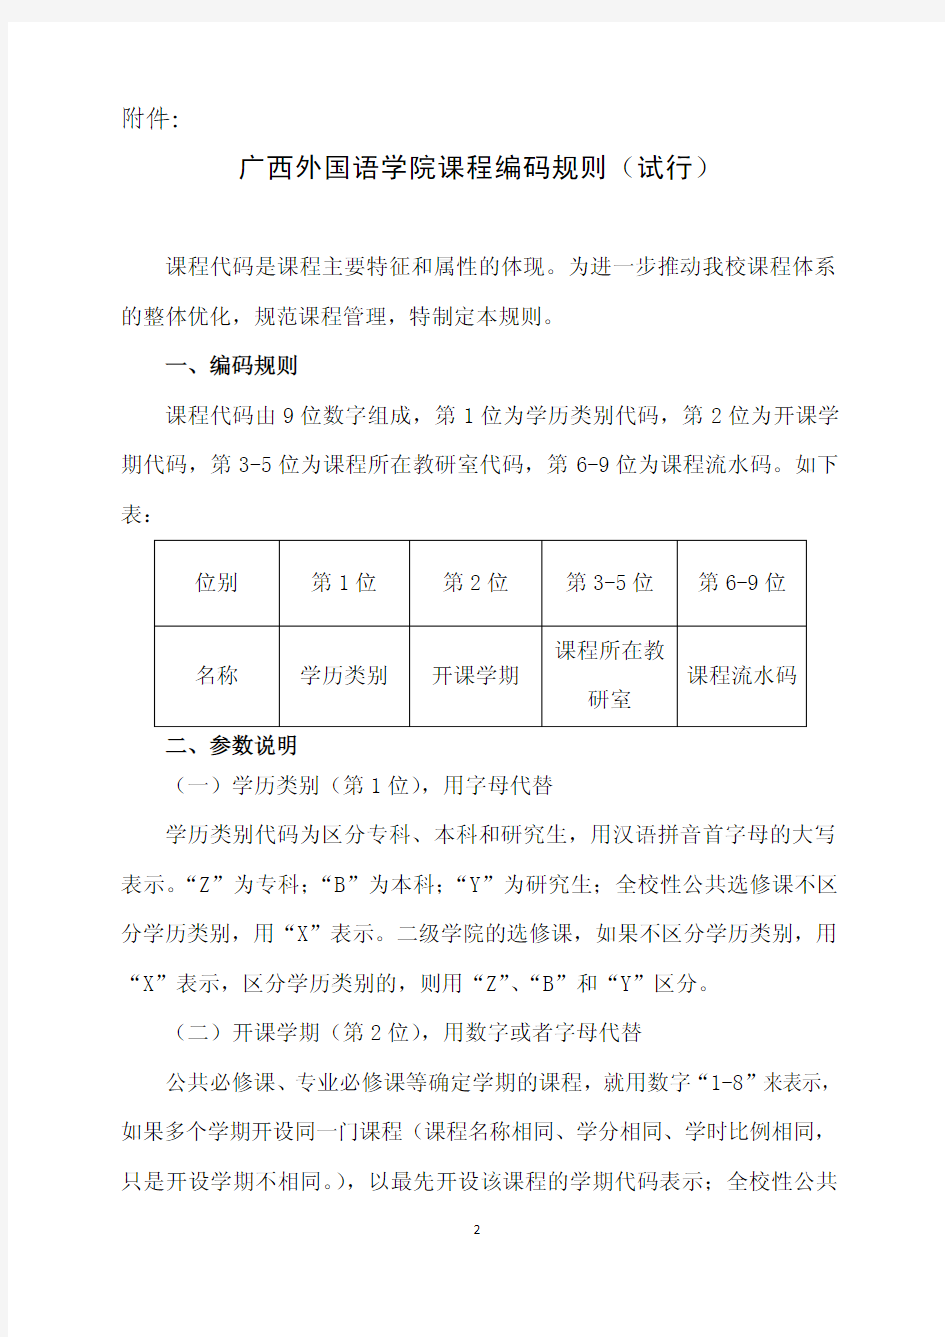 20130115152949_广外教务〔2012〕16号关于印发《广西外国语学院课程编码规则(试行)》的通知